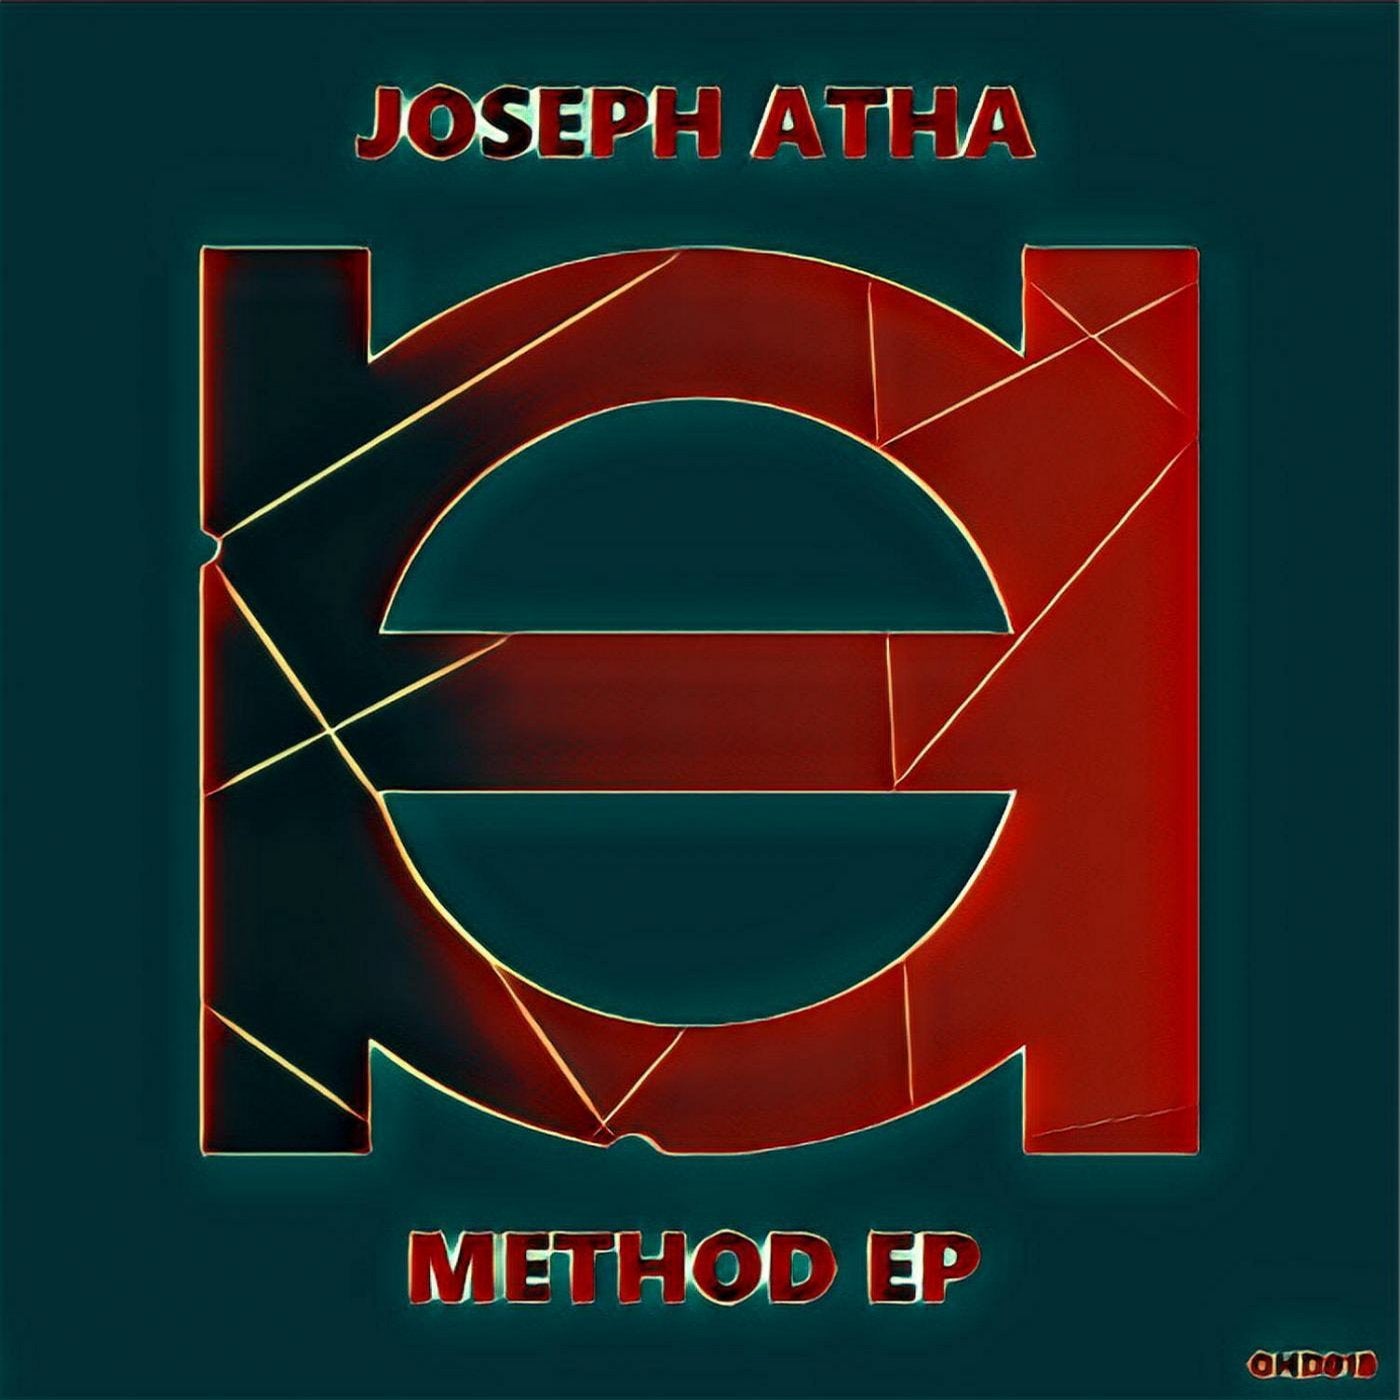 Method EP